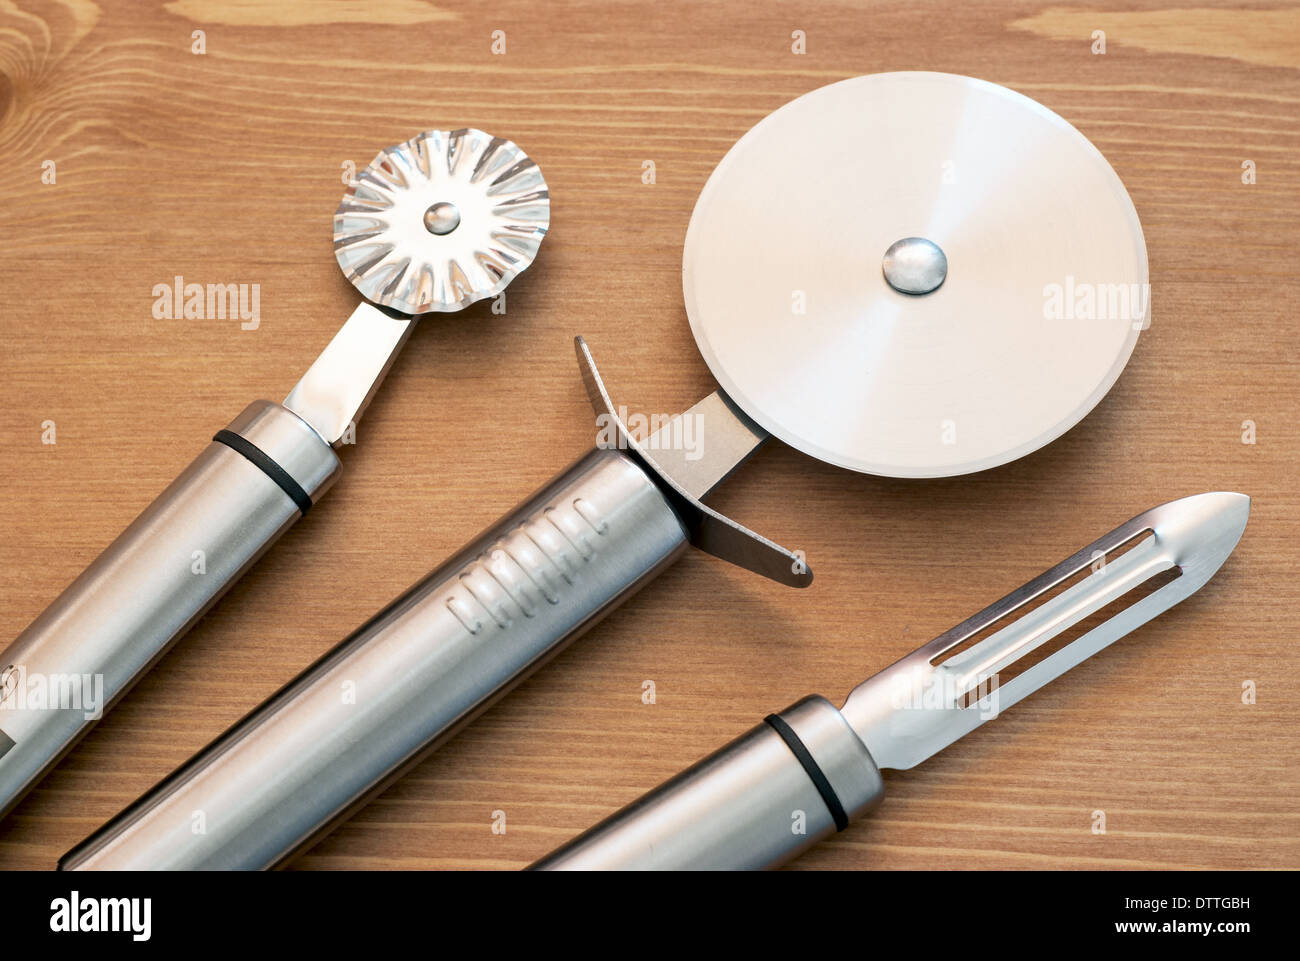 Conjunto de nuevas herramientas de cocina de acero inoxidable sobre fondo de madera. Foto de stock